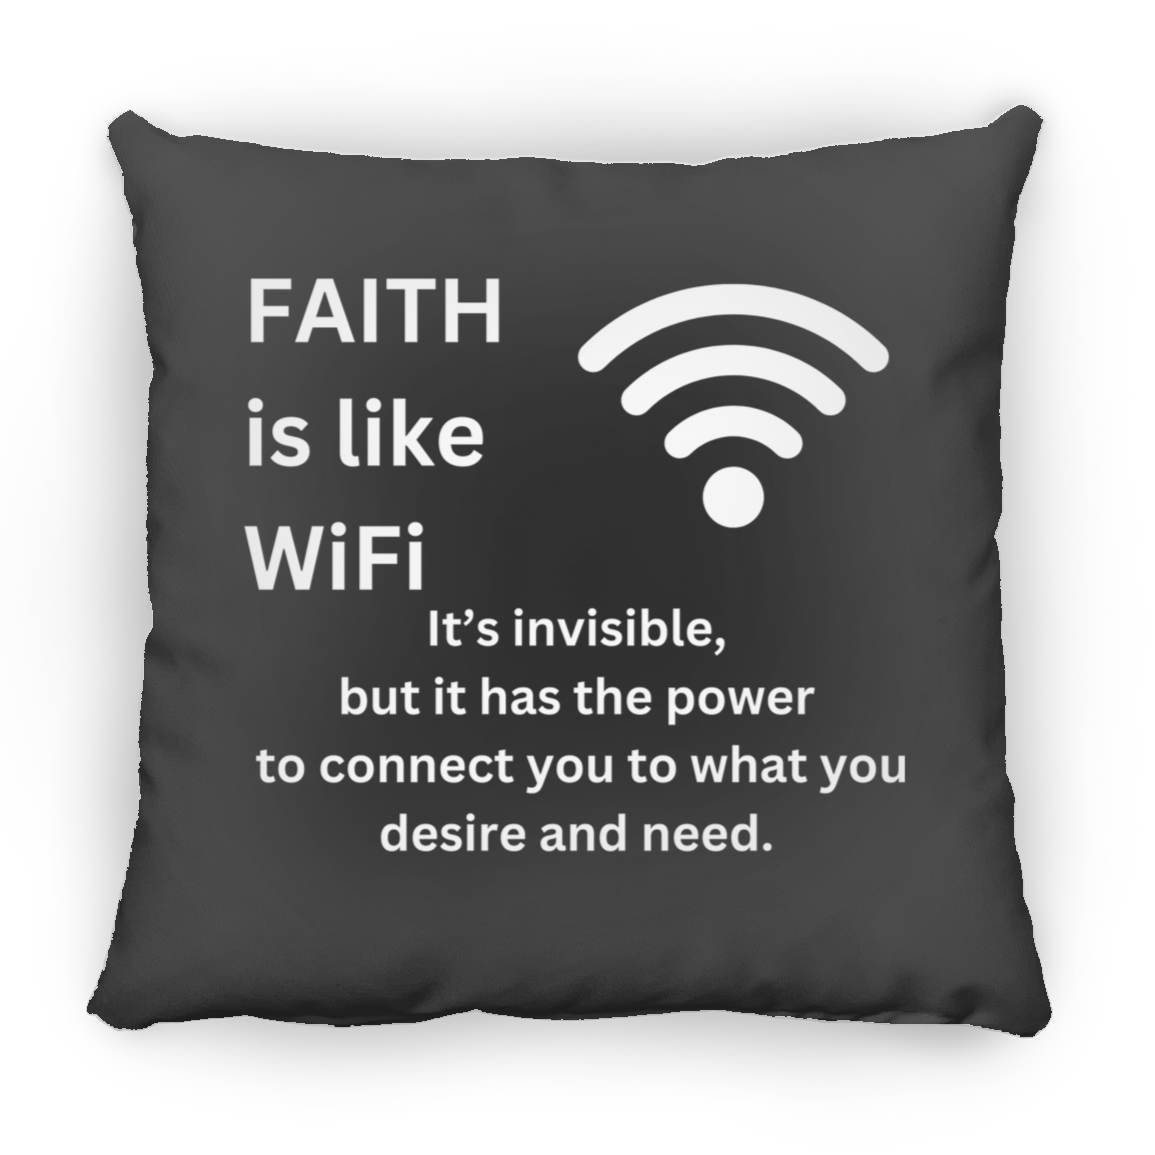 Faith is like WiFi Pillows